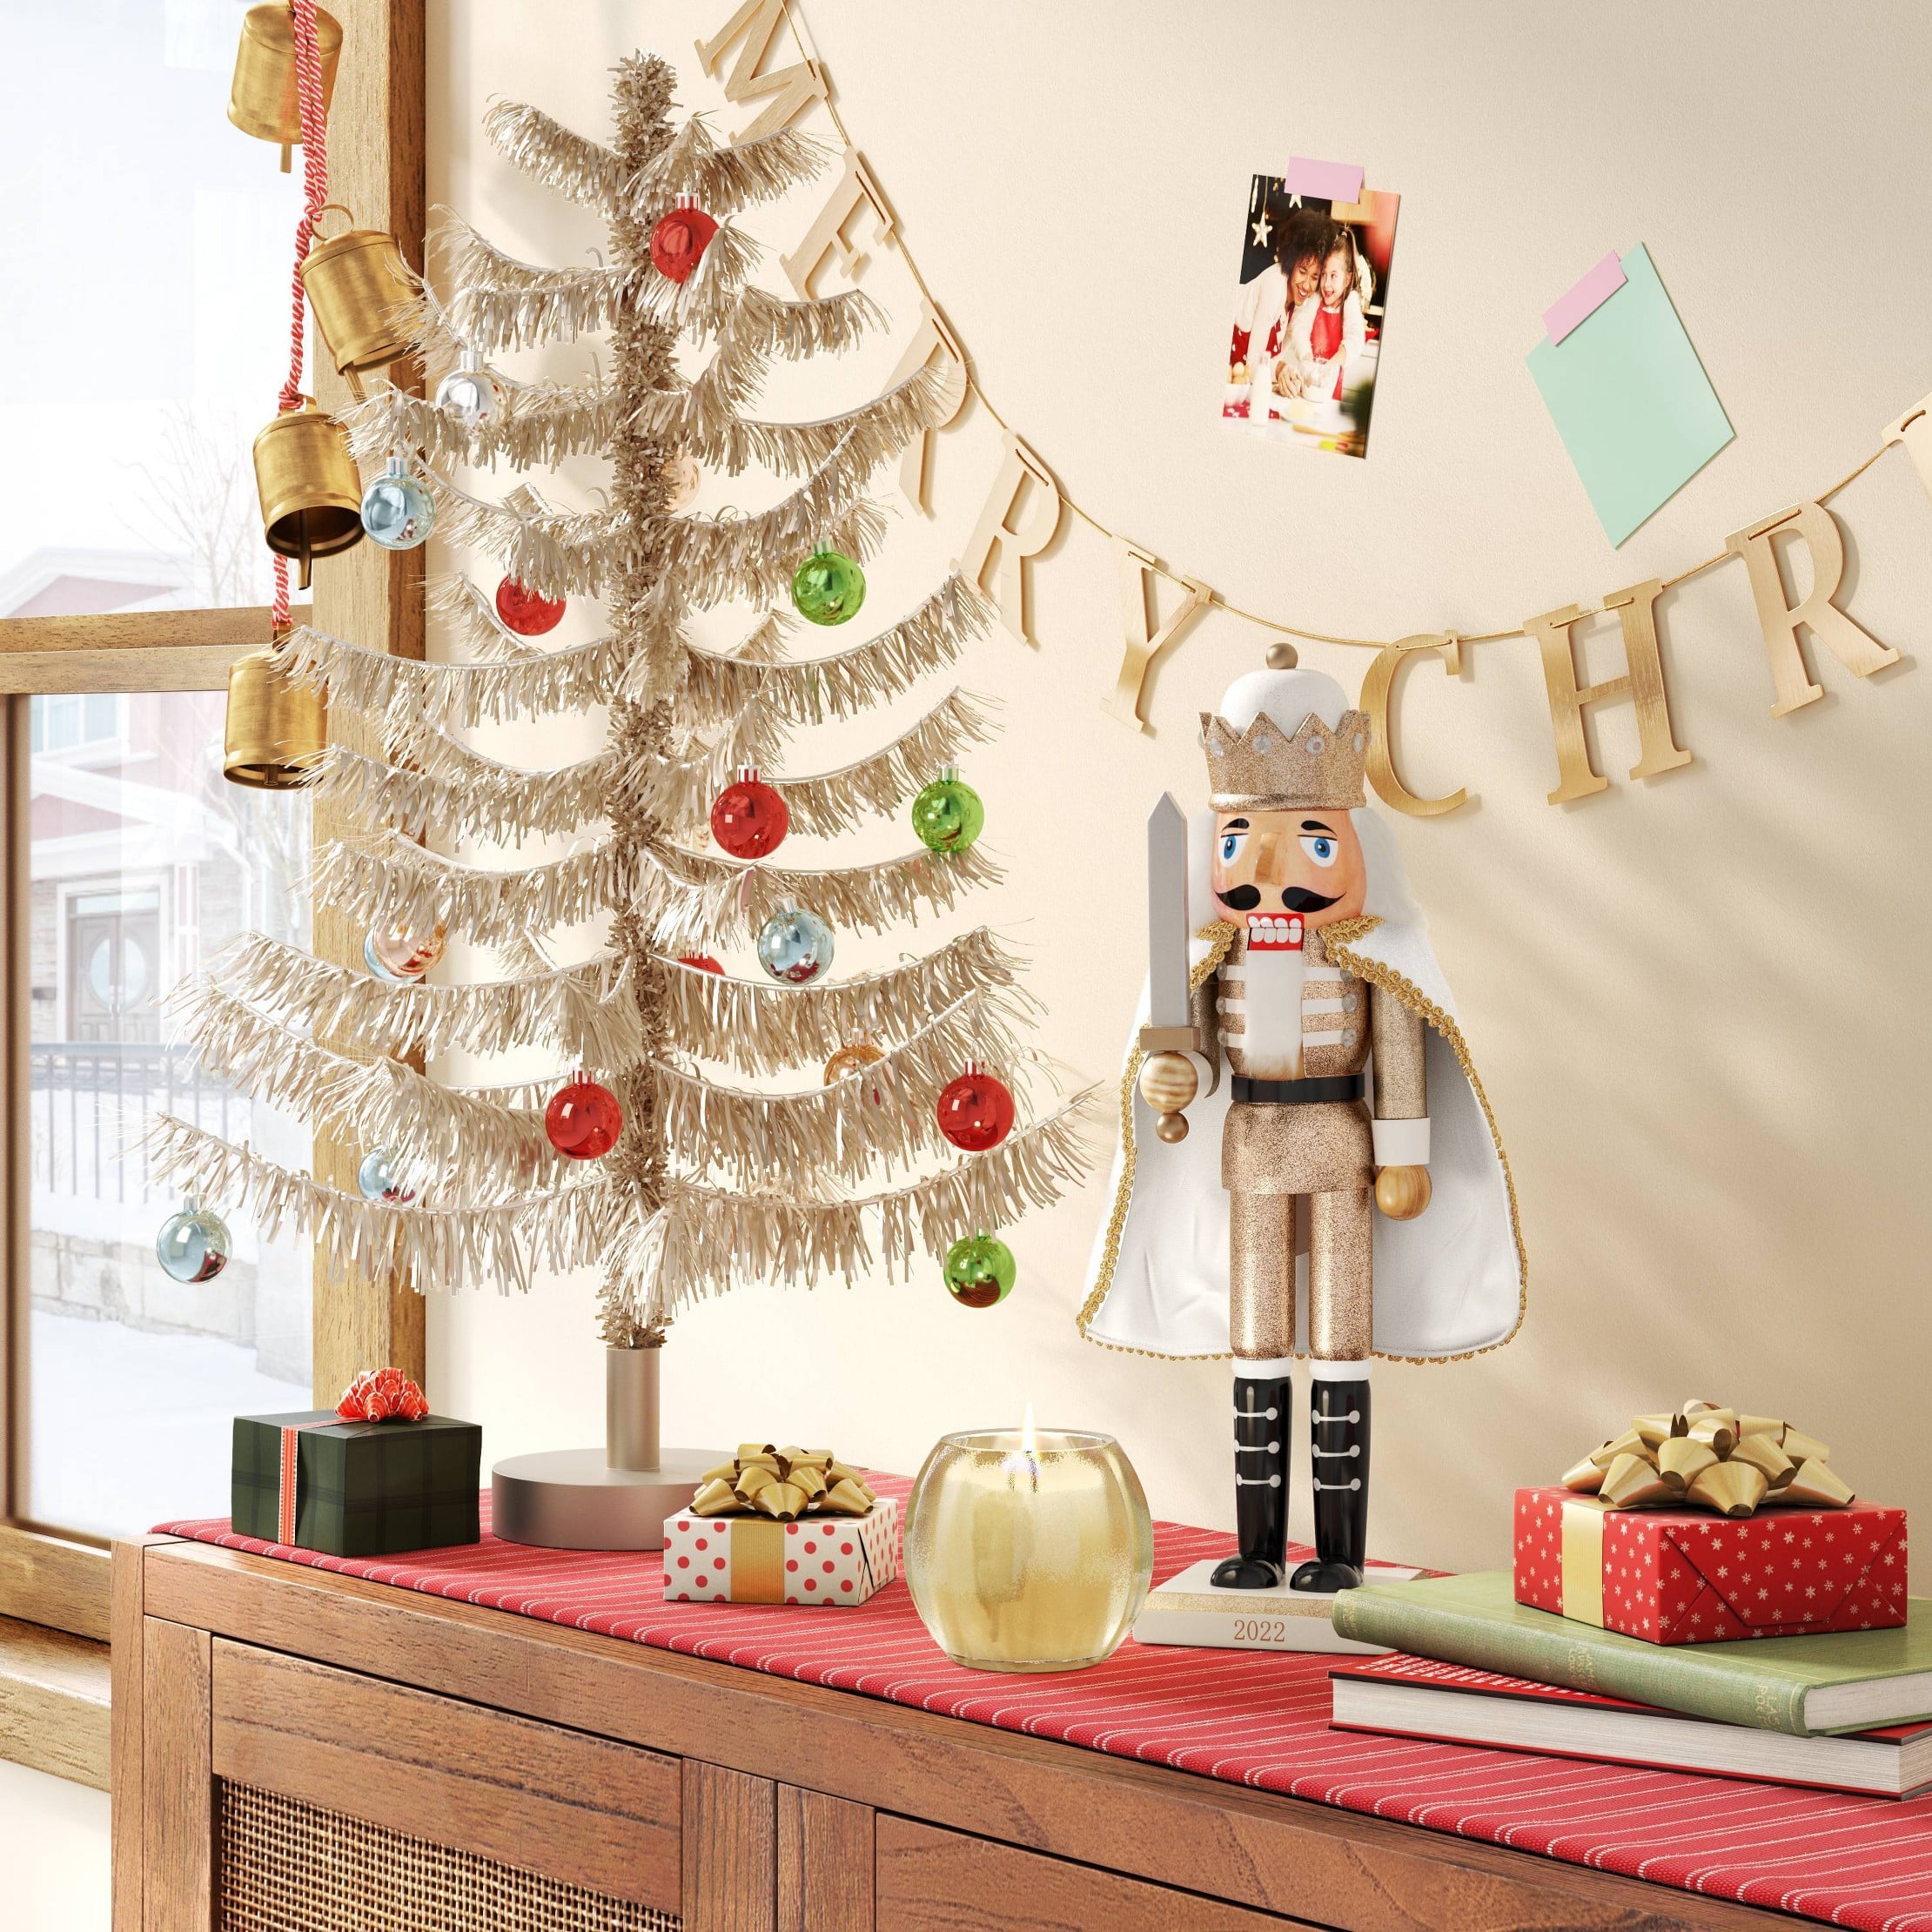 Wood Christmas Ornaments, Natural Holiday Coasters